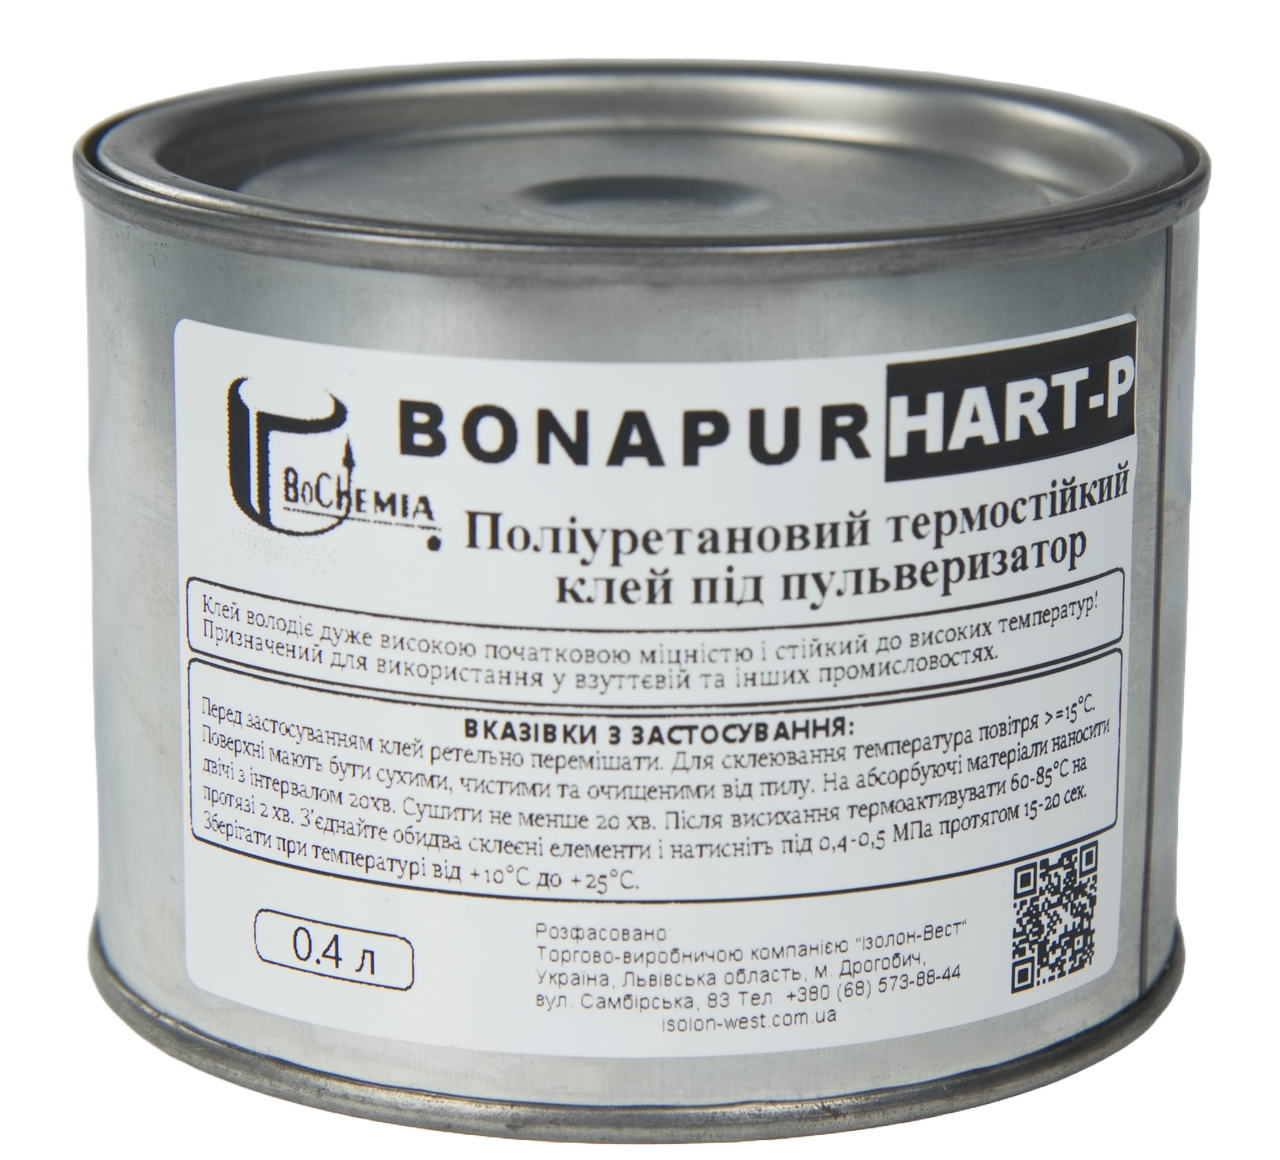 Поліуретановий термостійкий клей BONAPUR HART-P під пульверизатор для шкірозамінника, тканин, пвх, синтетичної шкіри анонс фото